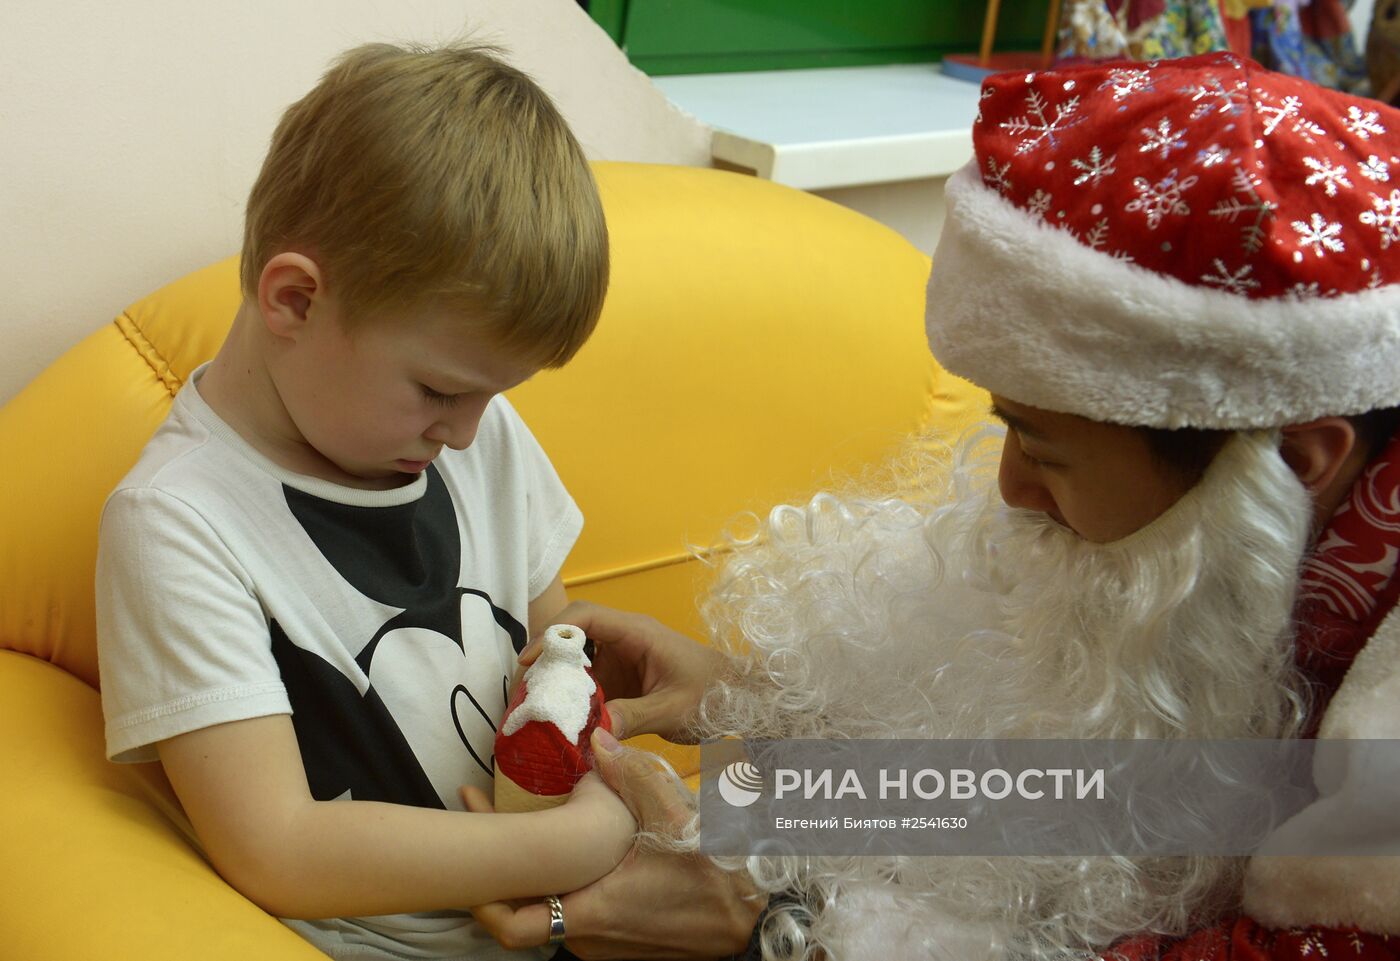 Российский спортсмен Виктор Ан посетил московский детский сад